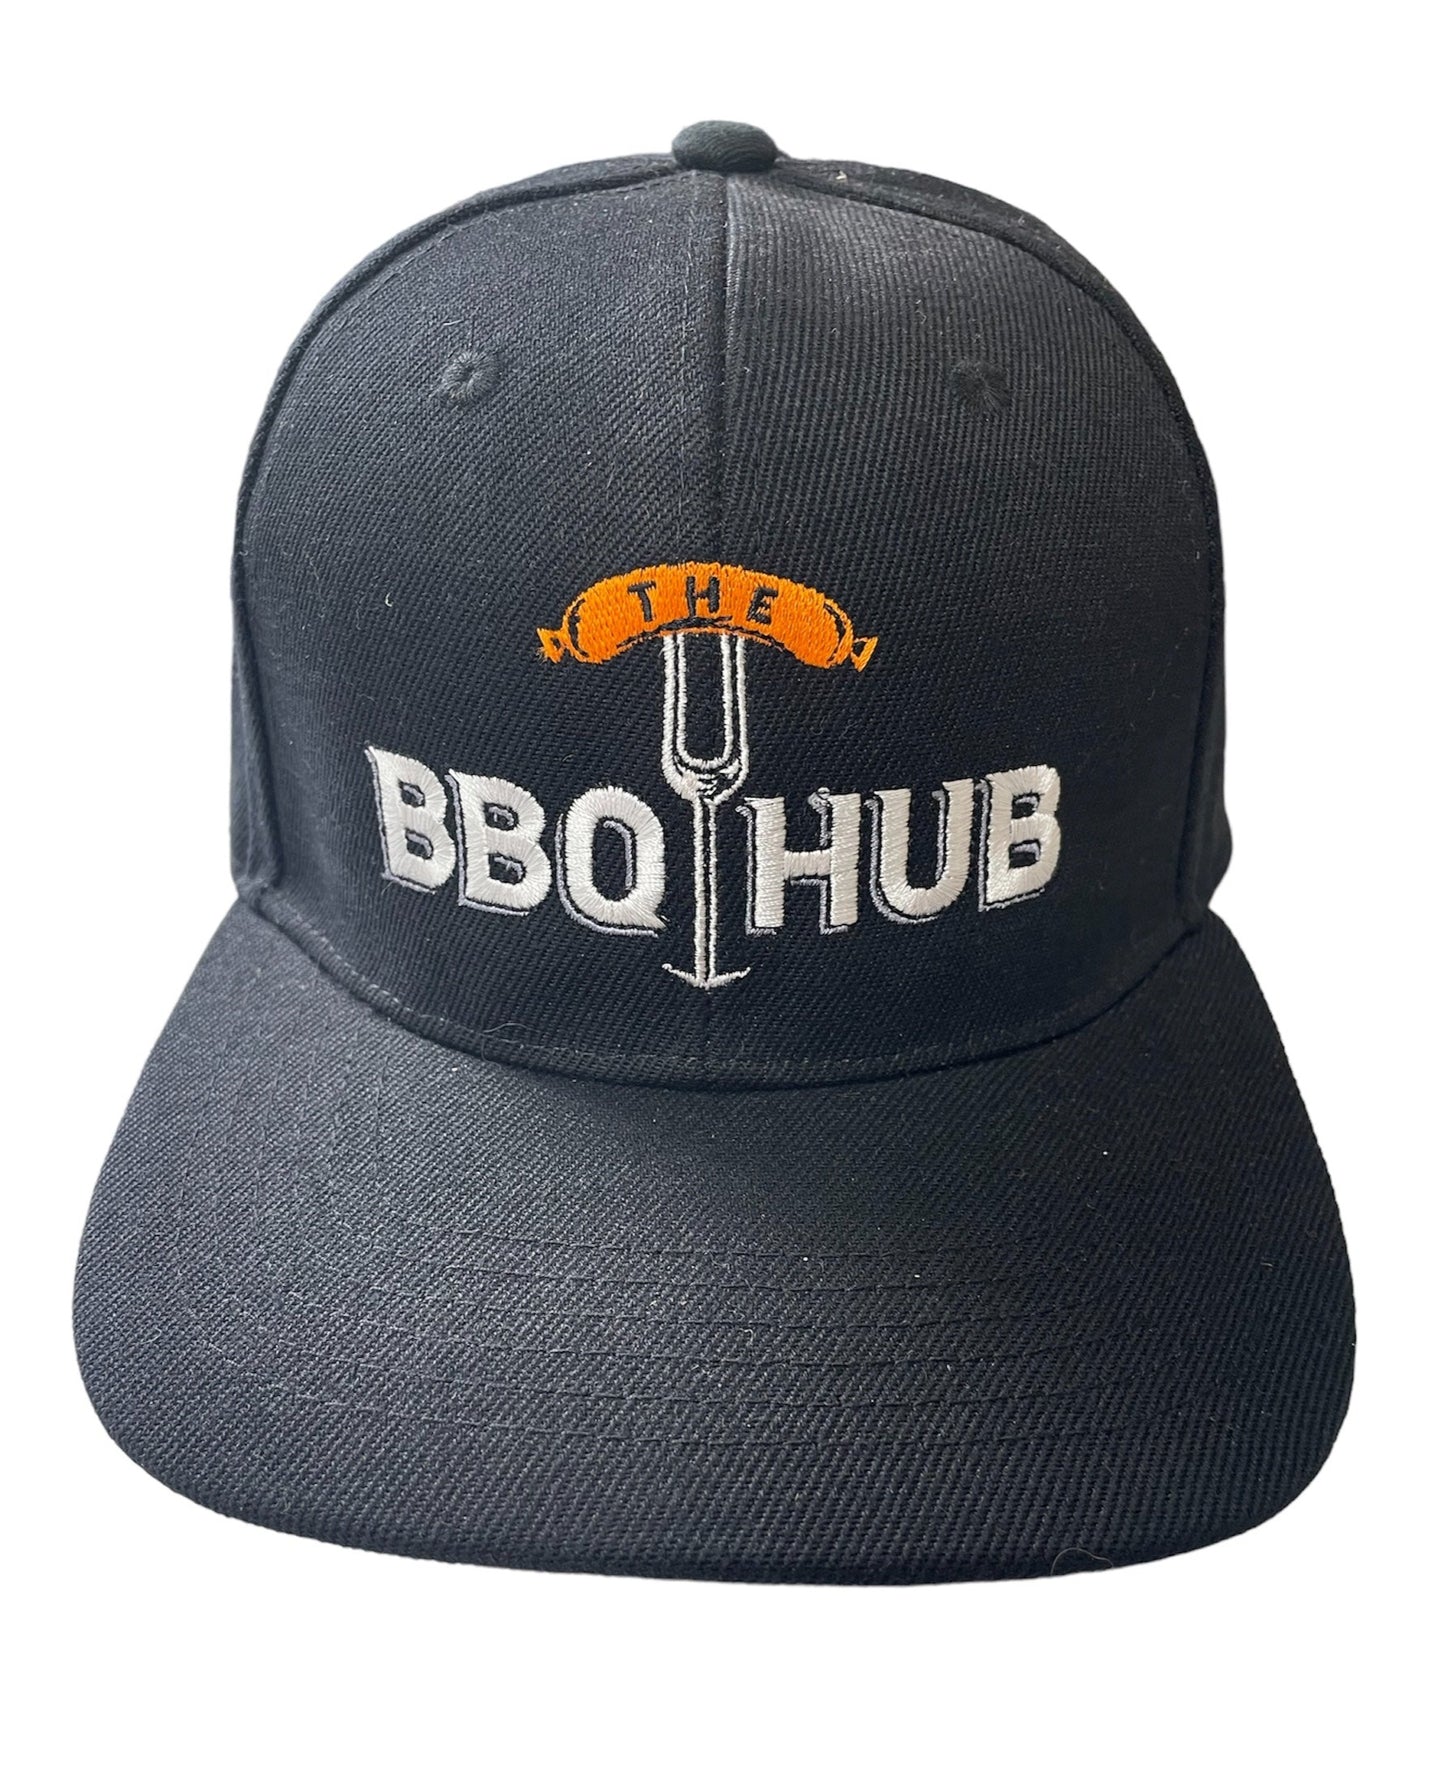 The BBQ Hub Flat Beak Cap